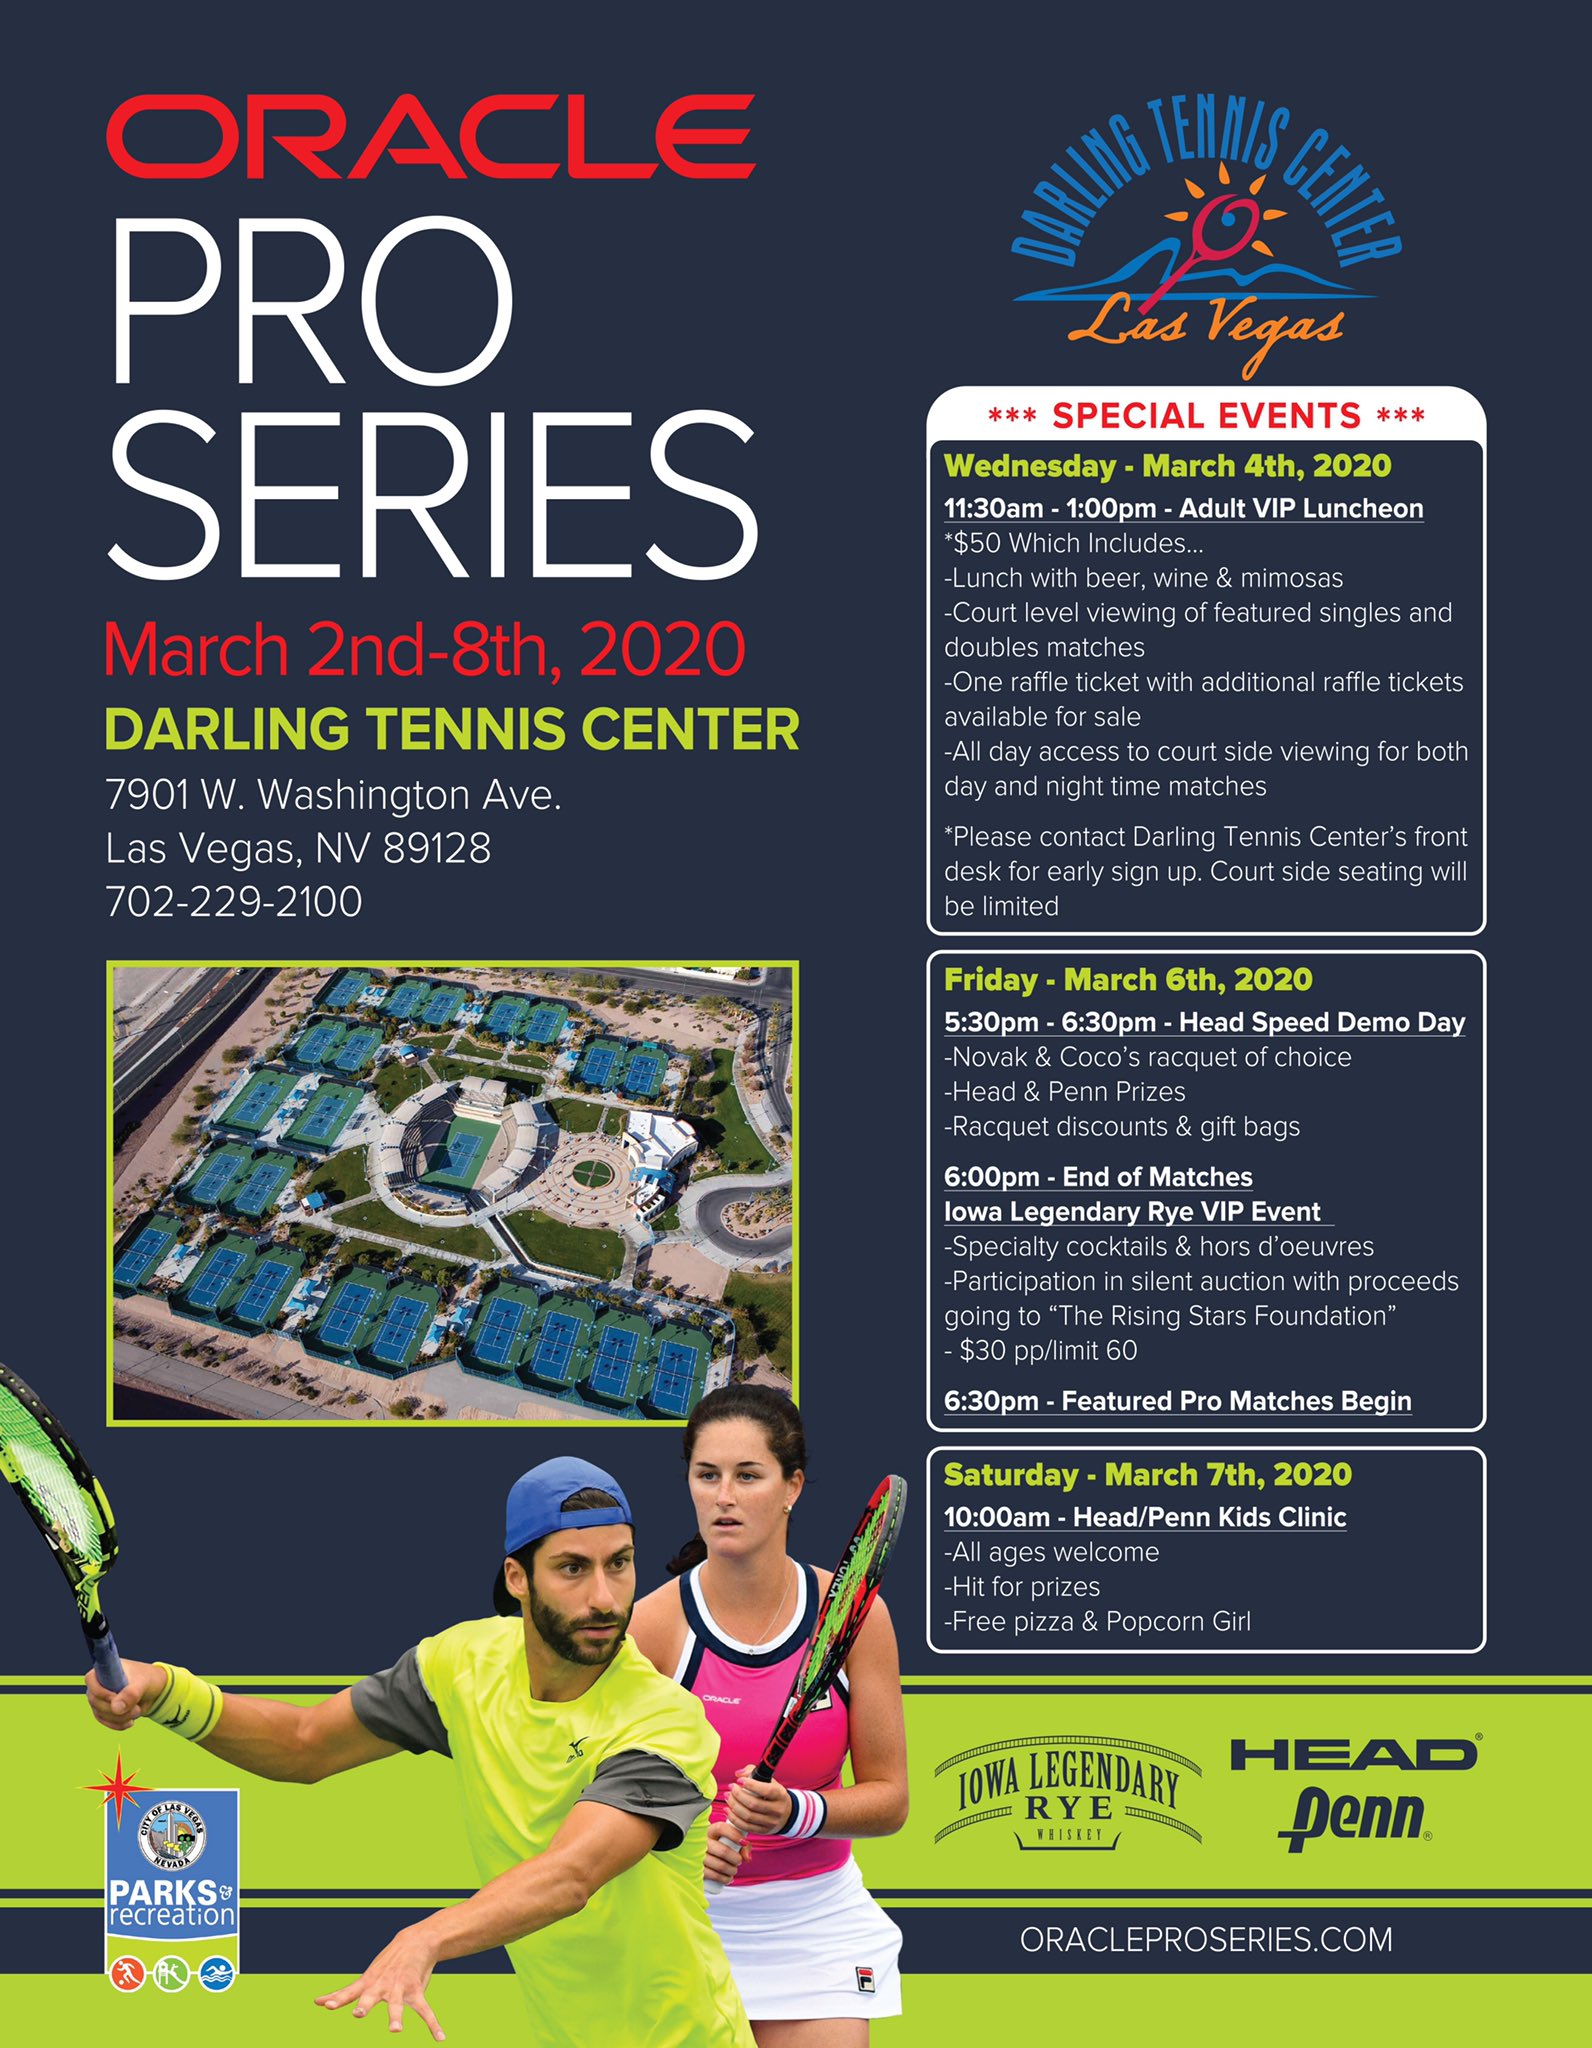 Darling Tennis Center Tennisdarling Twitter